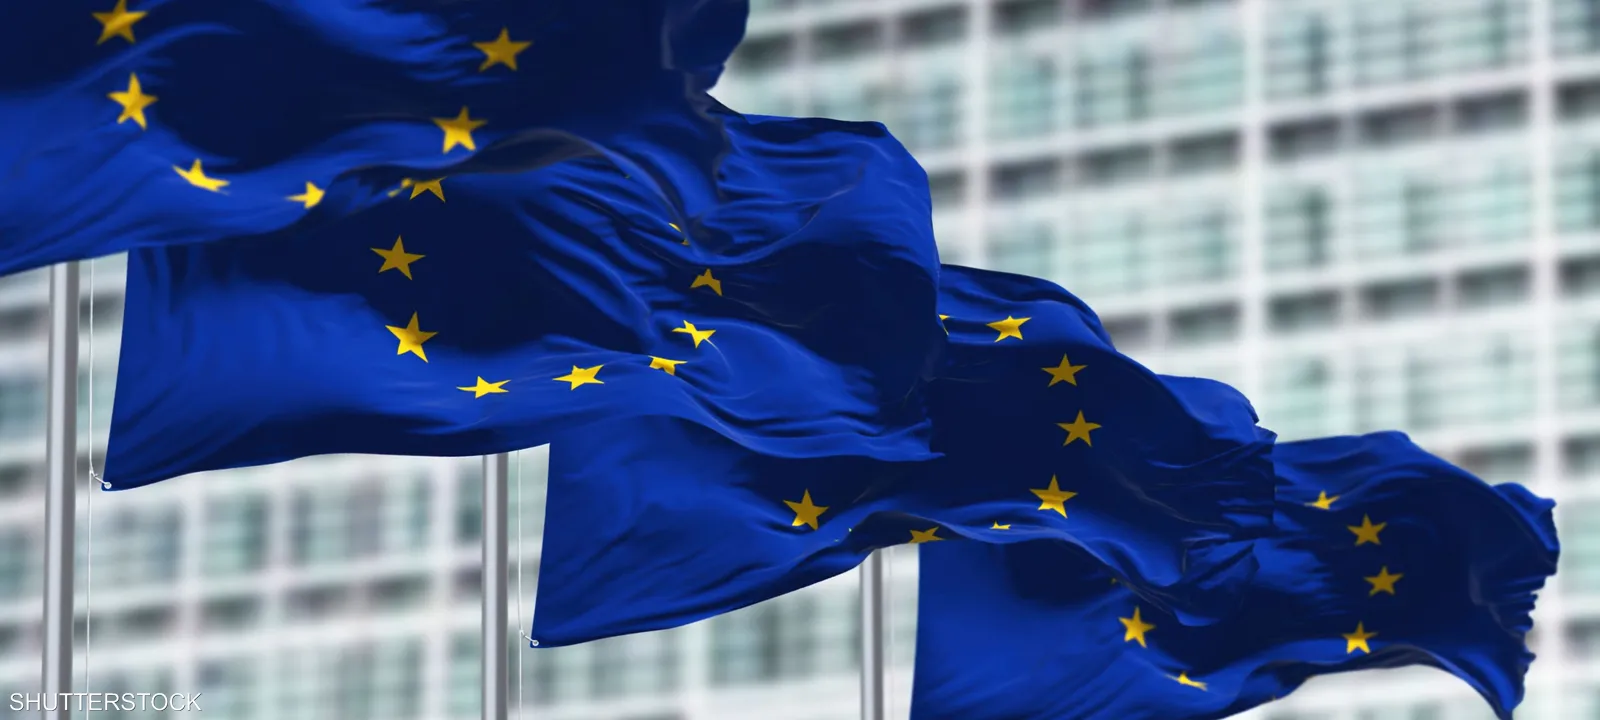 الاتحاد الأوروبي يخصص 7.7 مليار يورو للمساعدات الإنسانية